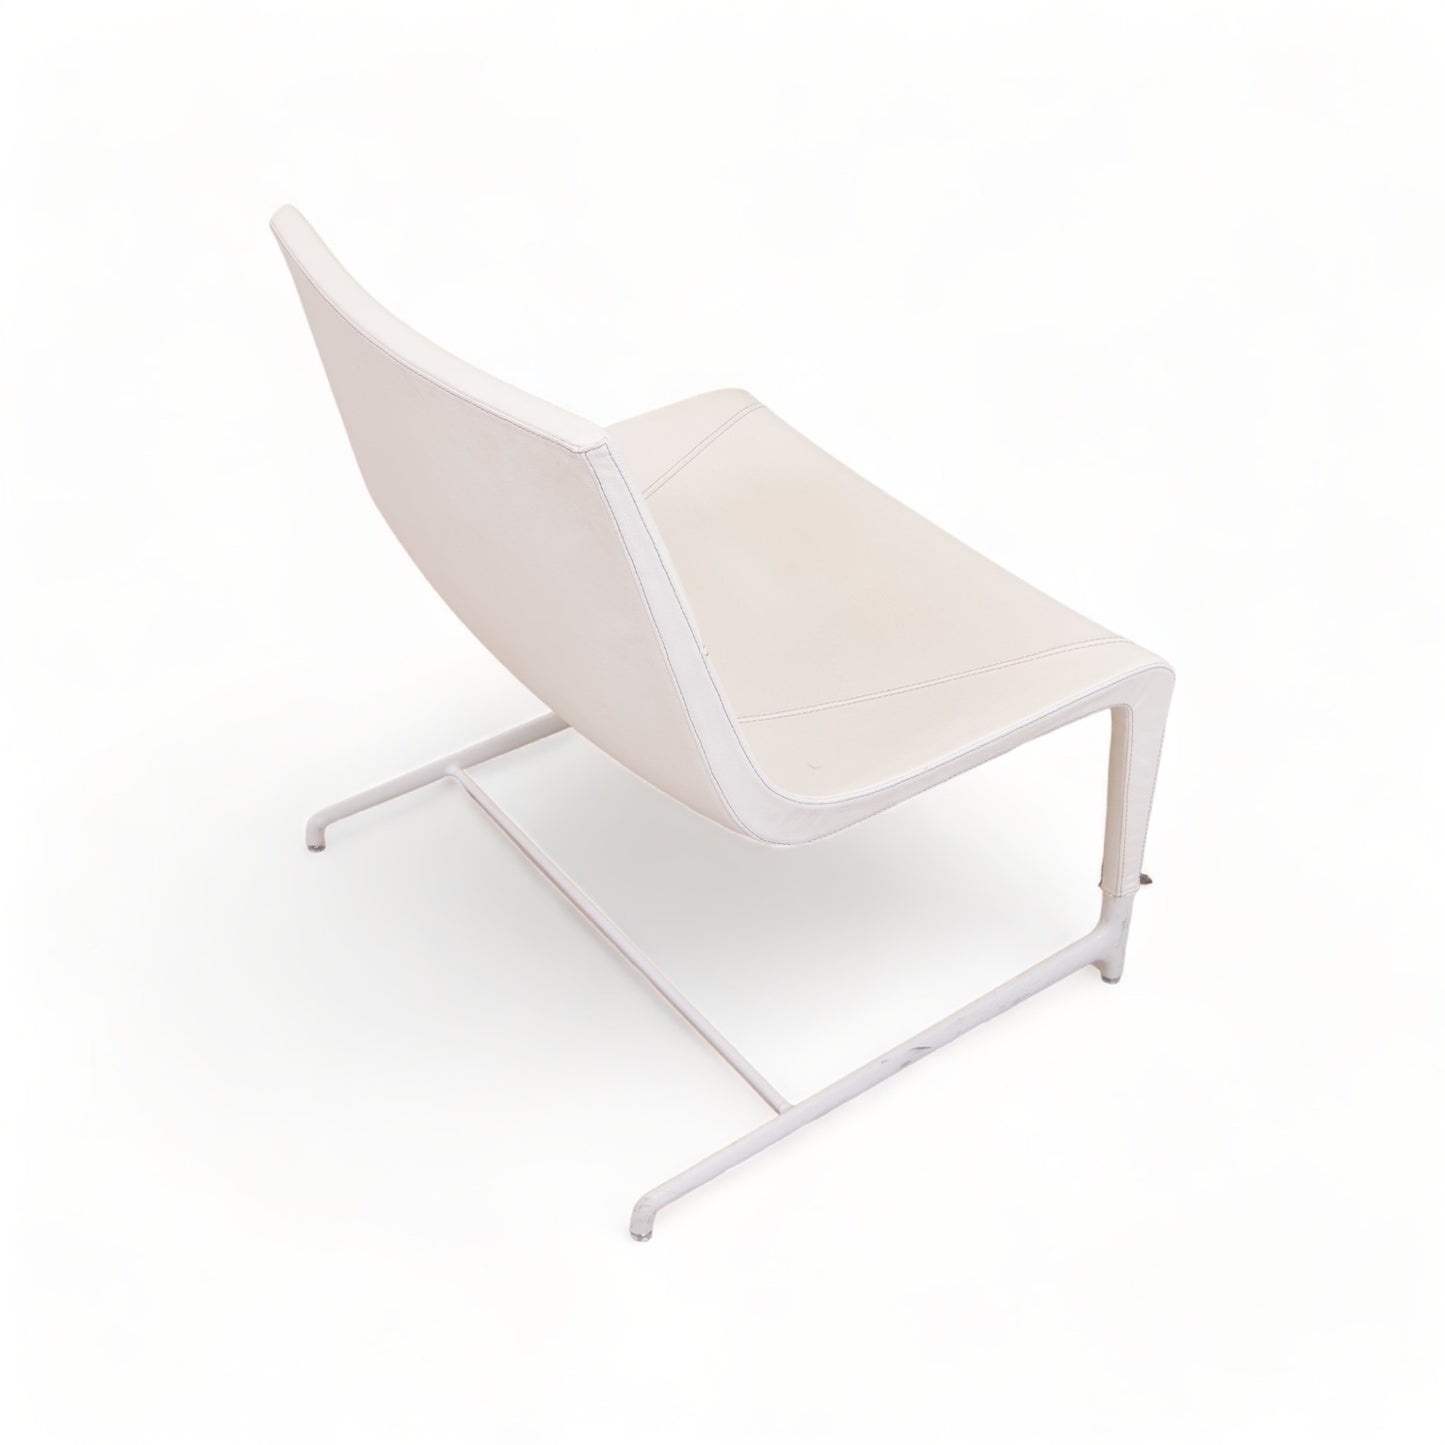 Nyrenset | Hvit ventestol fra Emmegi